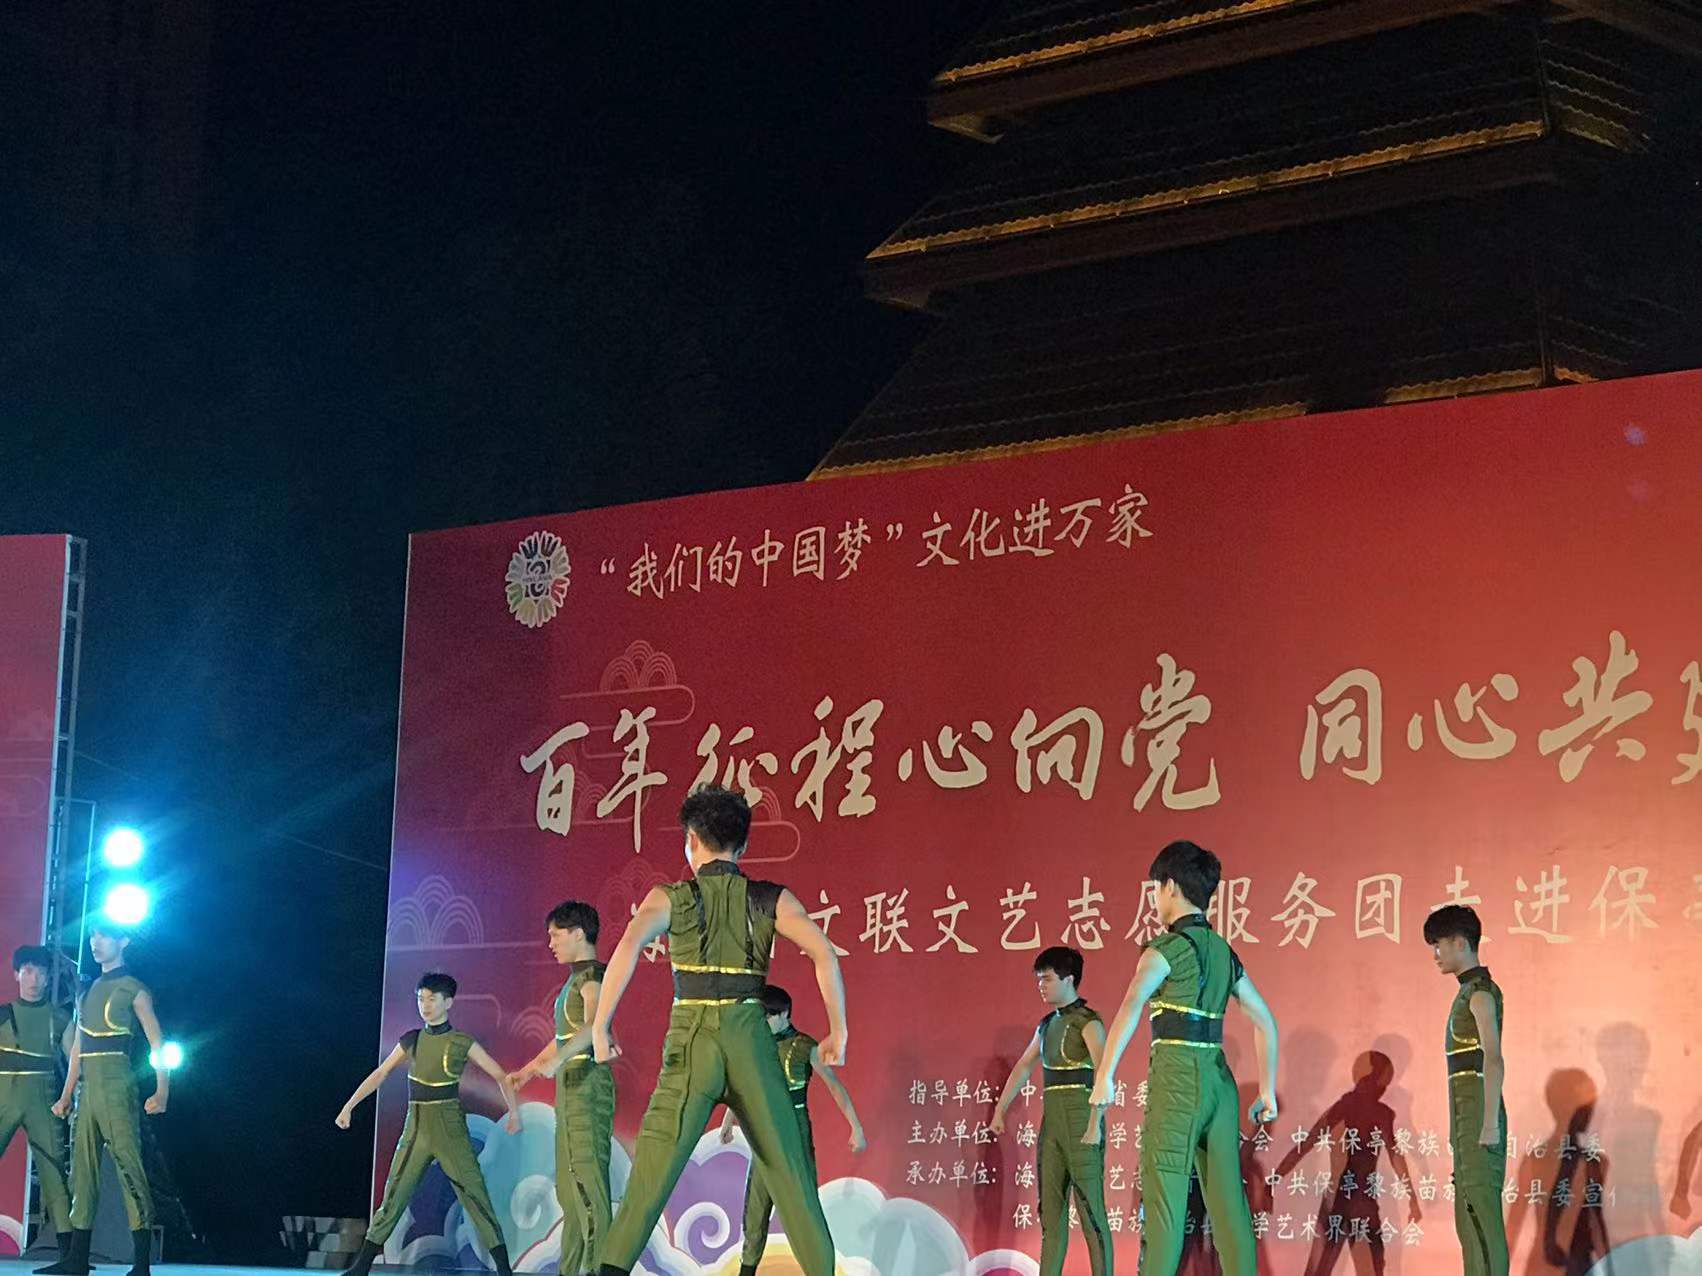 海南大学音乐与舞蹈学院带来舞蹈节目《刀锋》 凤凰网海南频道 摄